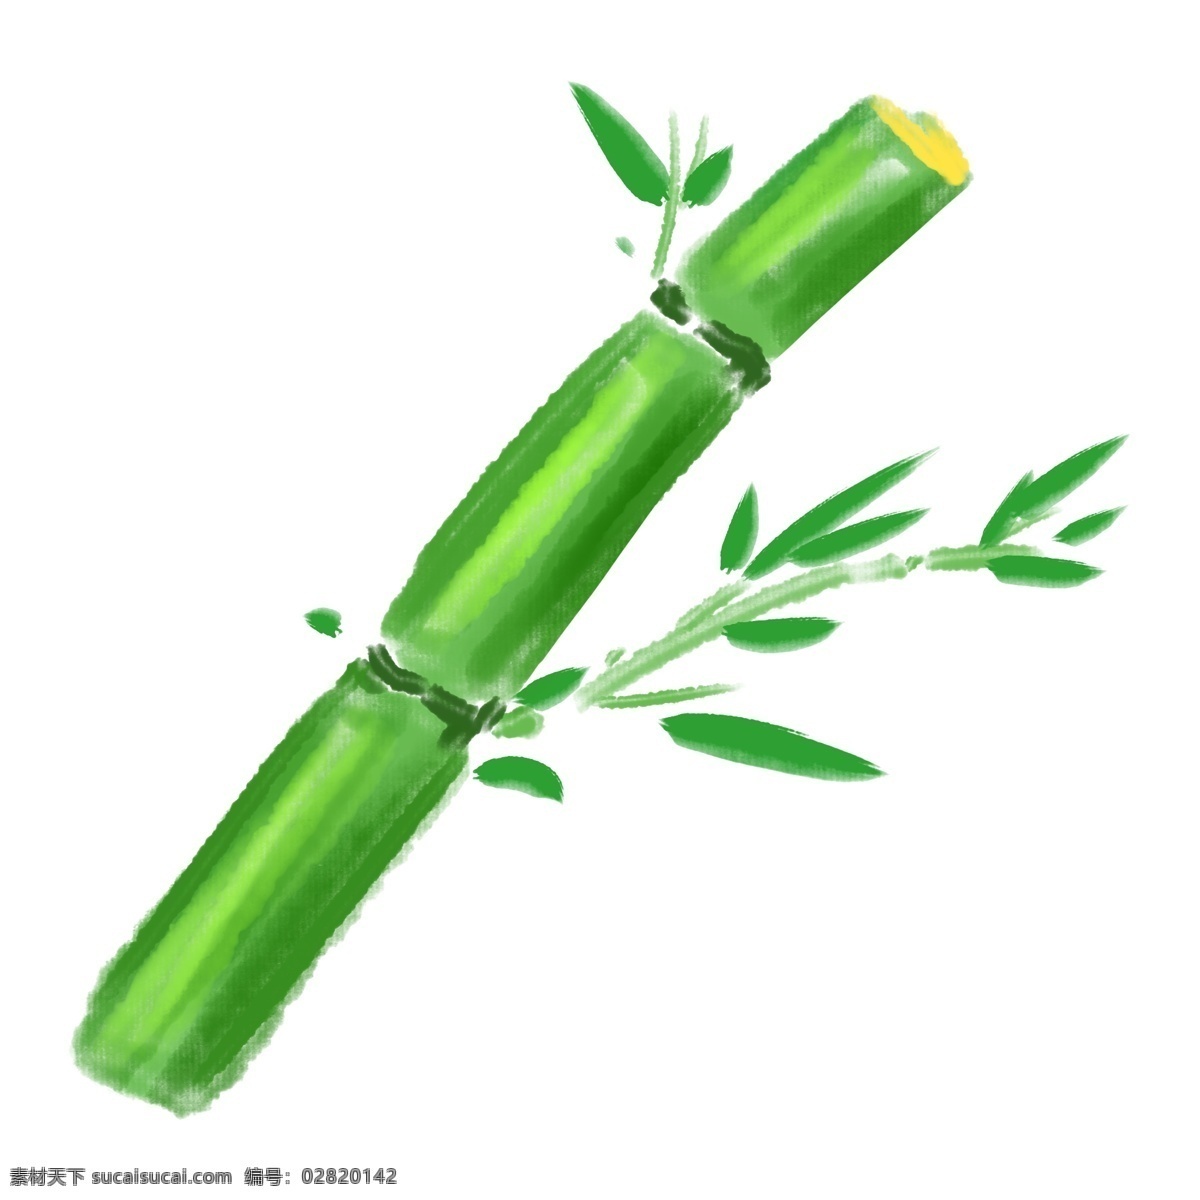 手绘 绘画 竹子 插画 绿色的竹子 国画的竹子 手绘竹子插画 文征明的竹子 写意的竹子 油画的竹子